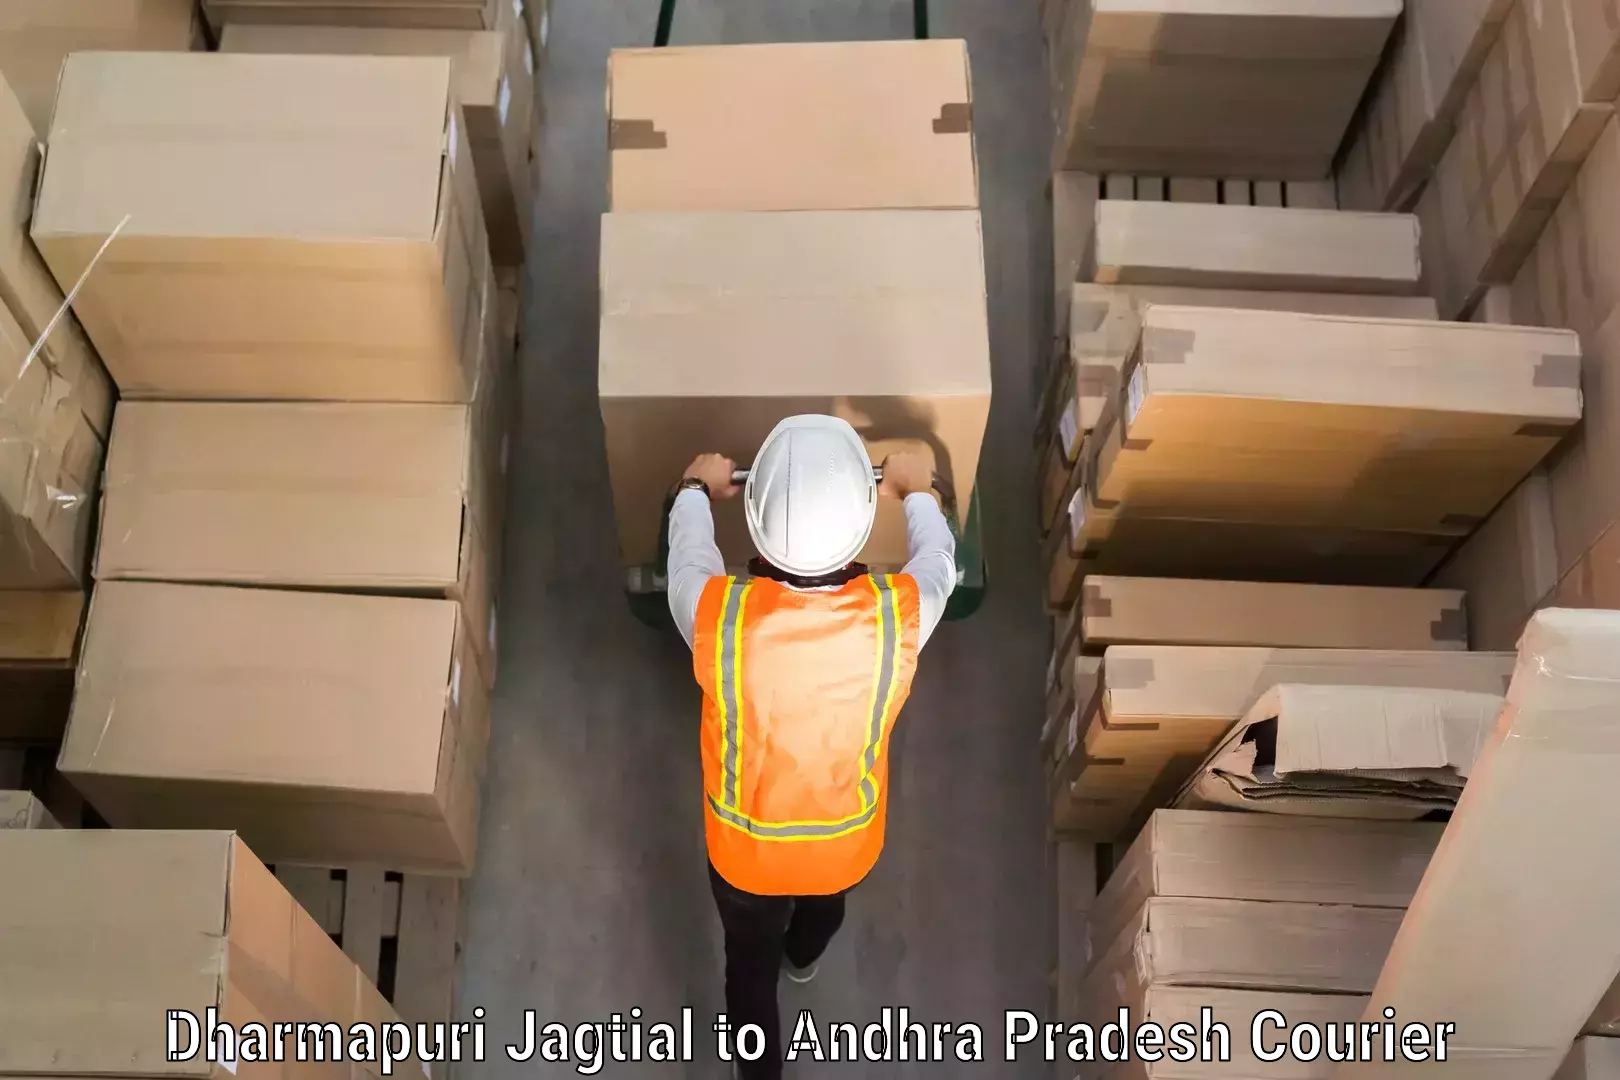 Professional baggage transport in Dharmapuri Jagtial to Cuddapah